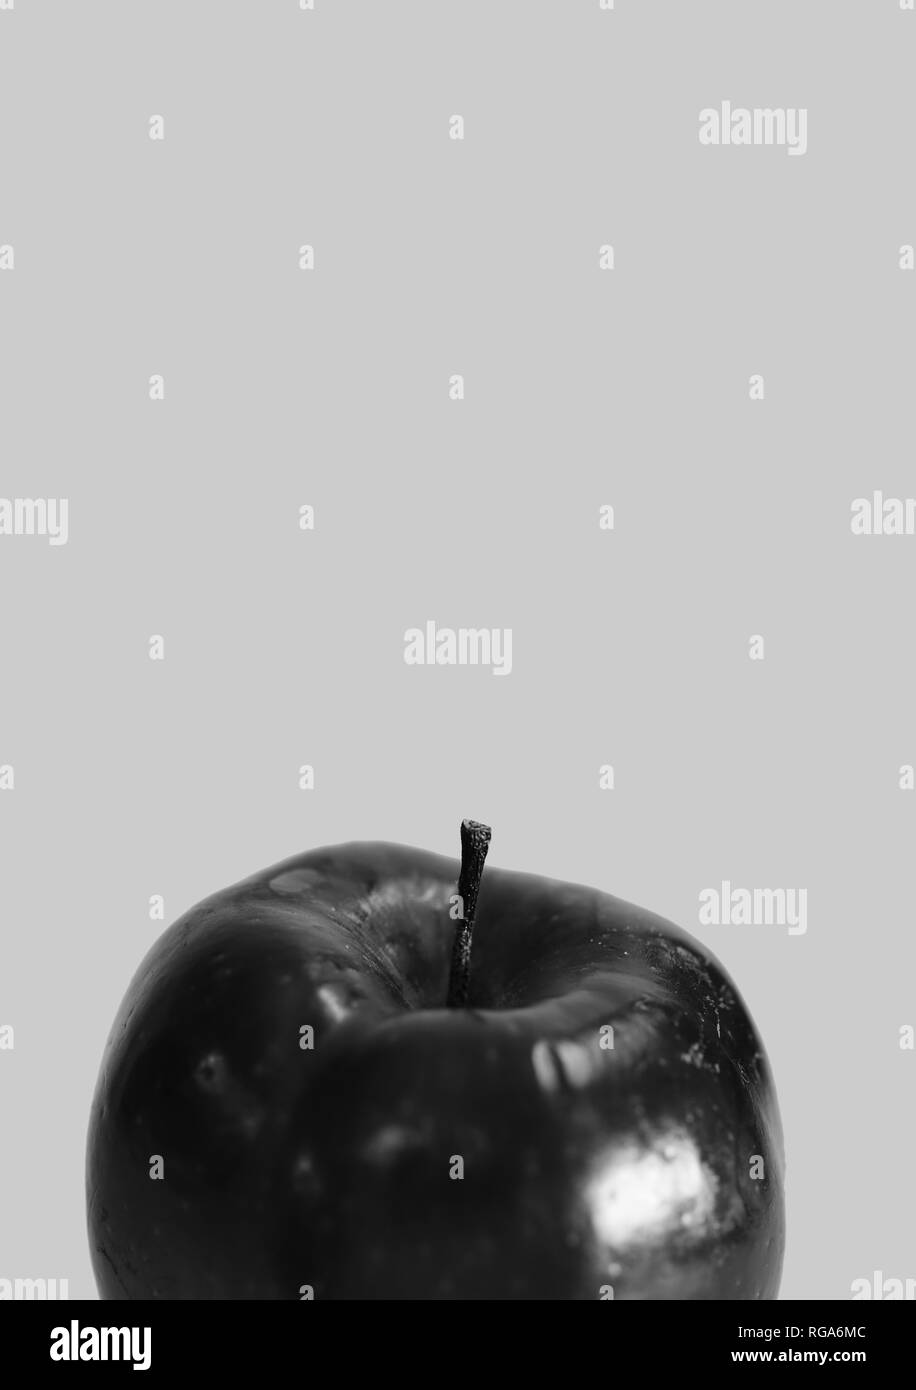 Makro Foto eines Red Delicious Apple. Schöne Nahaufnahme zeigt die Details dieser Frucht. Schwarz-weiß Foto. Stockfoto